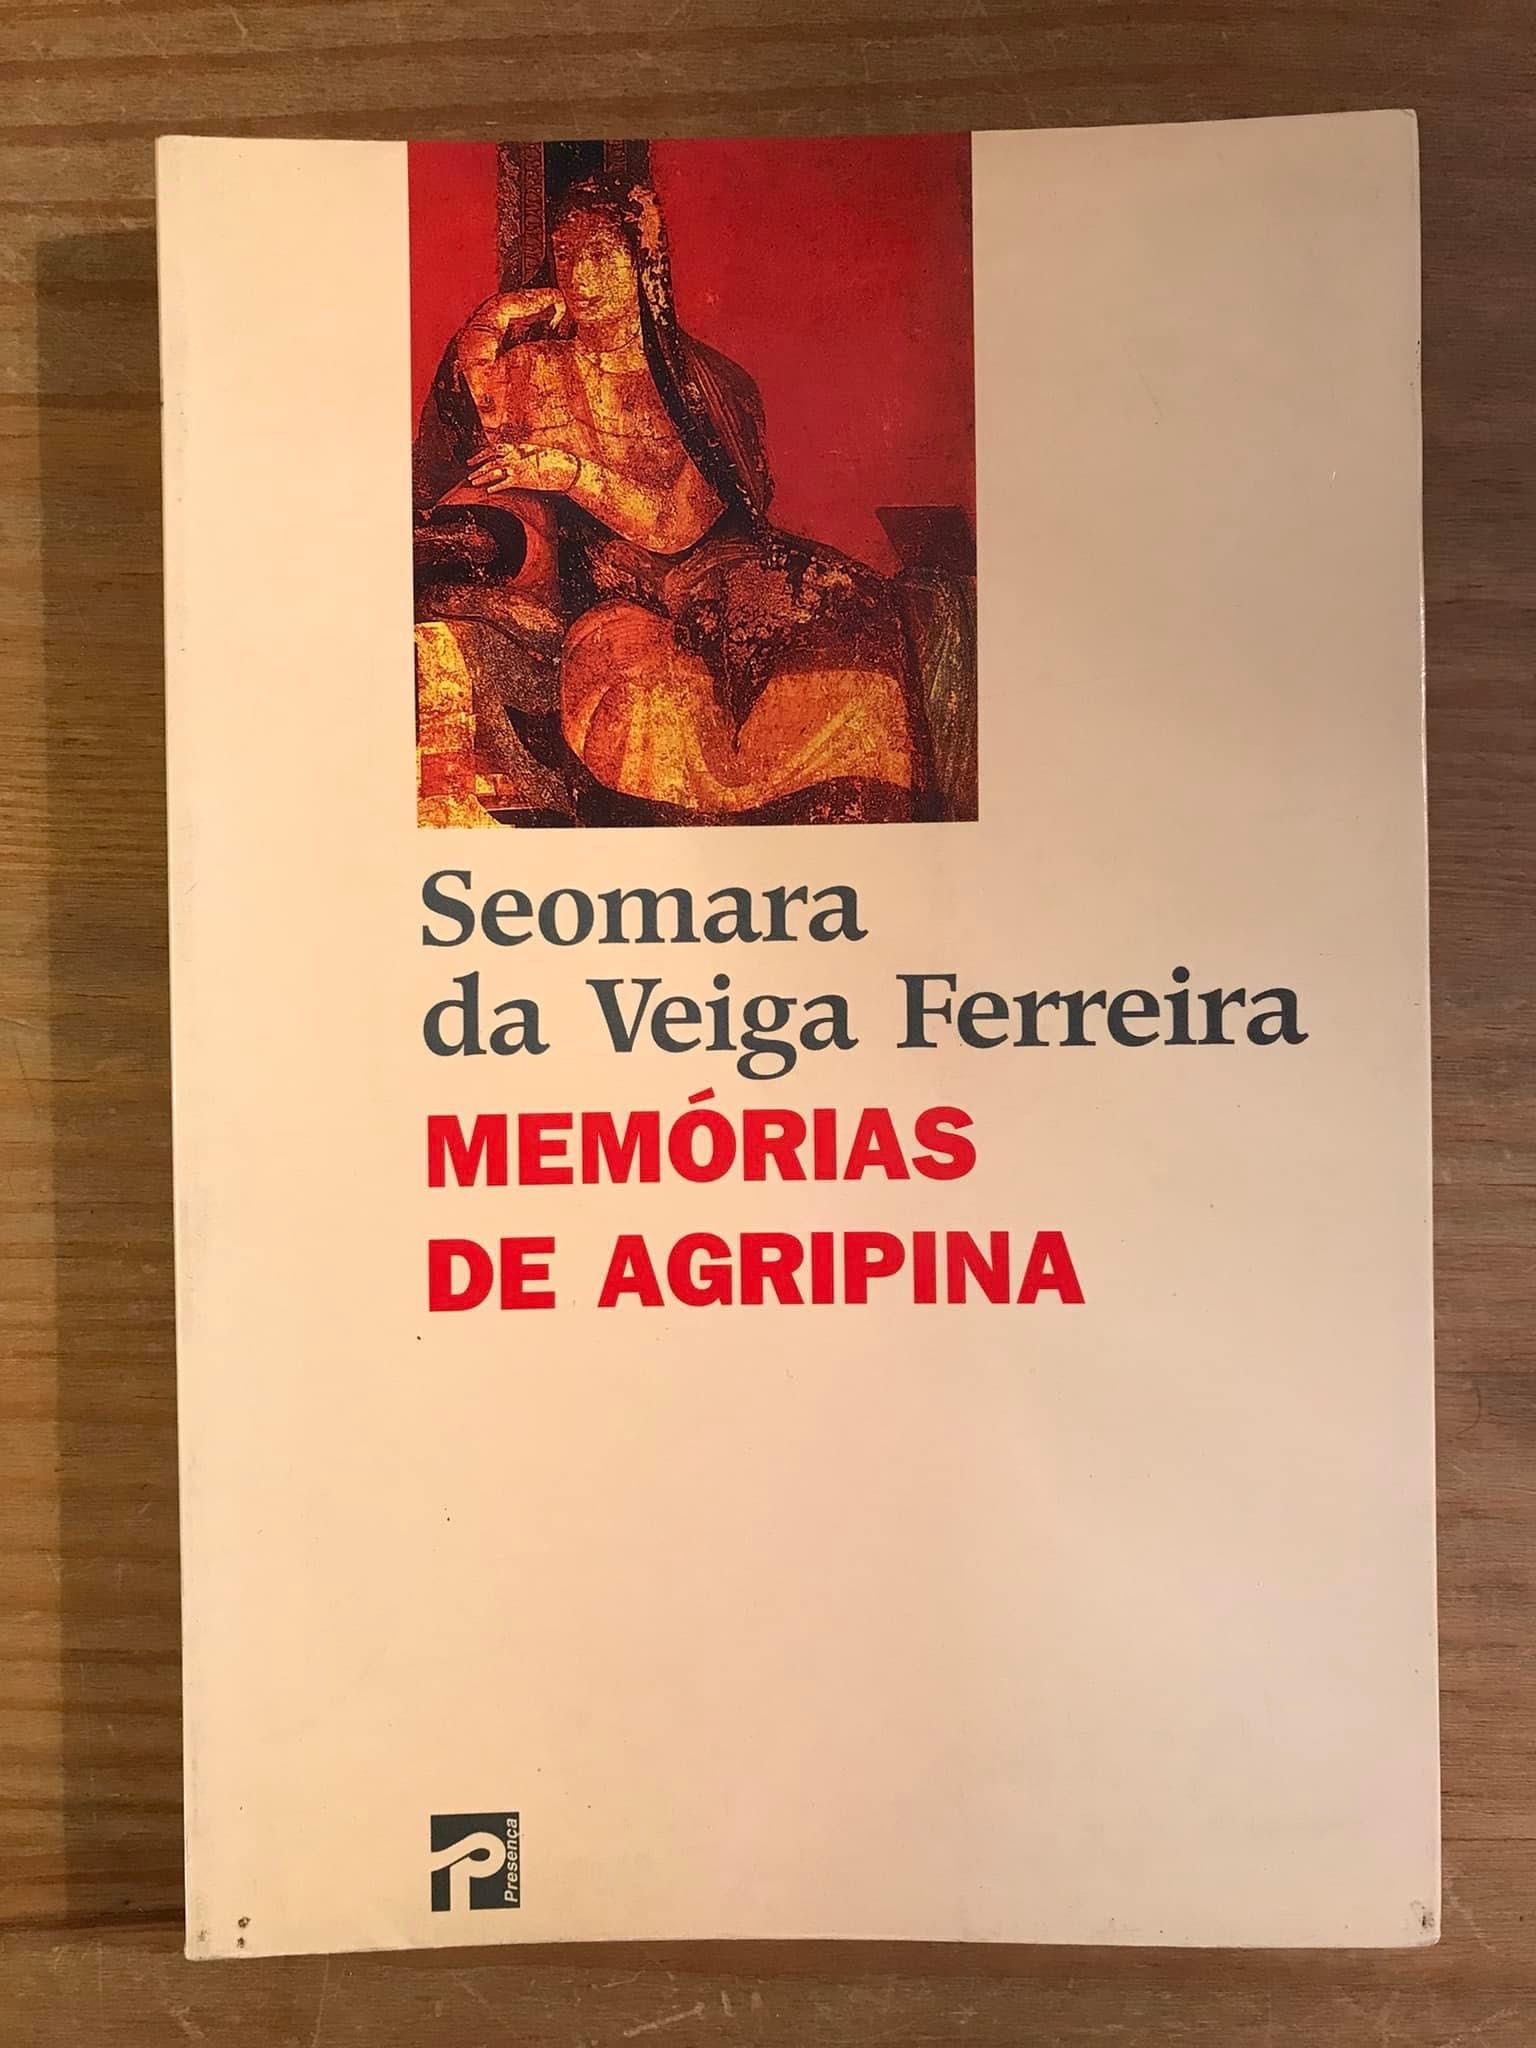 Memórias de Agripina - Seomara da Veiga Ferreira (portes grátis)